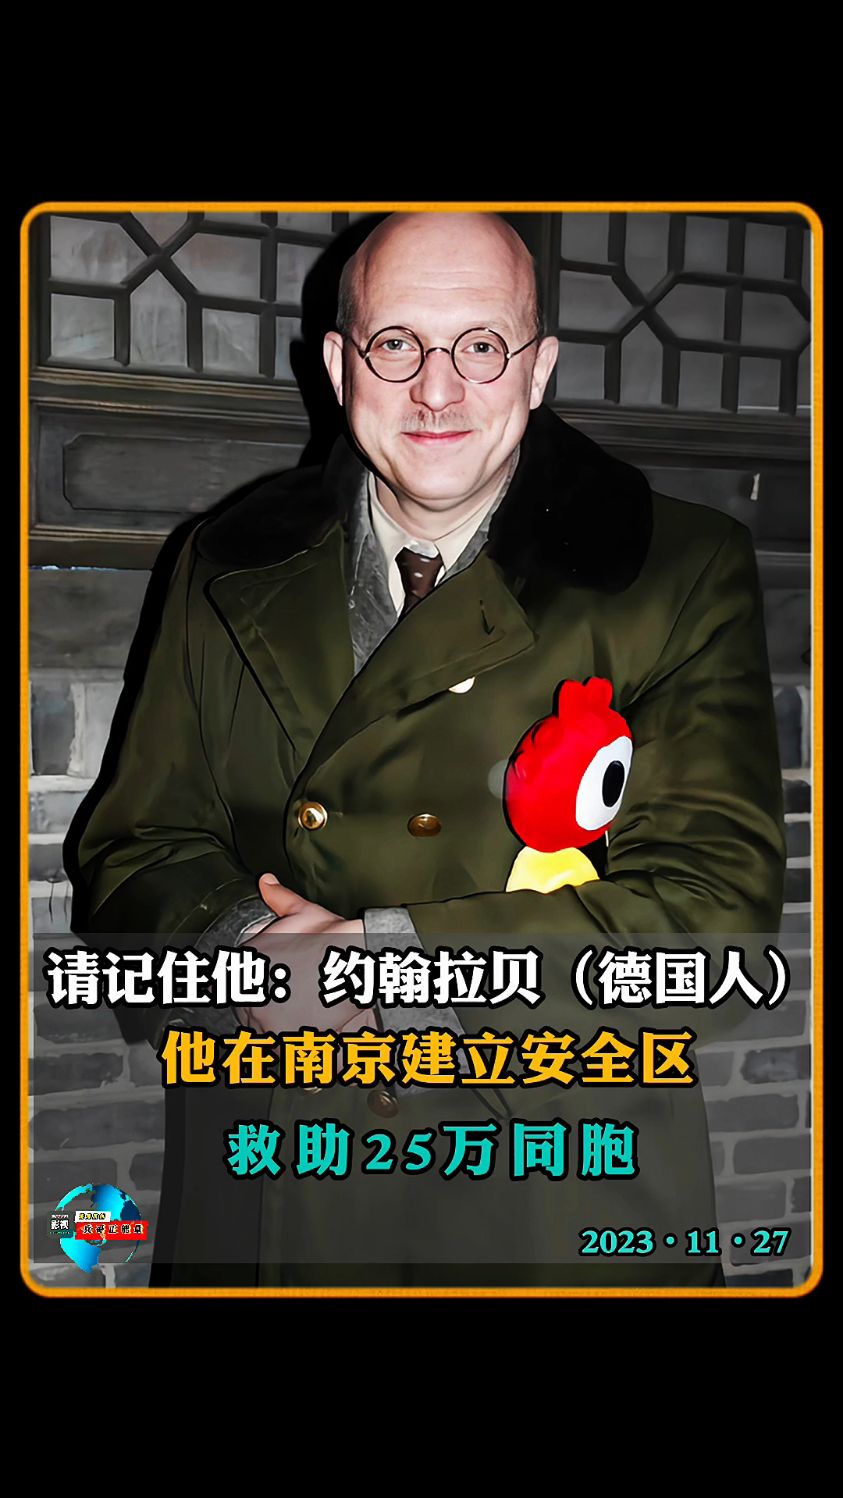 请记住他:约翰拉贝(德国人),1937年南京大屠杀,是他建立安全区,救助25